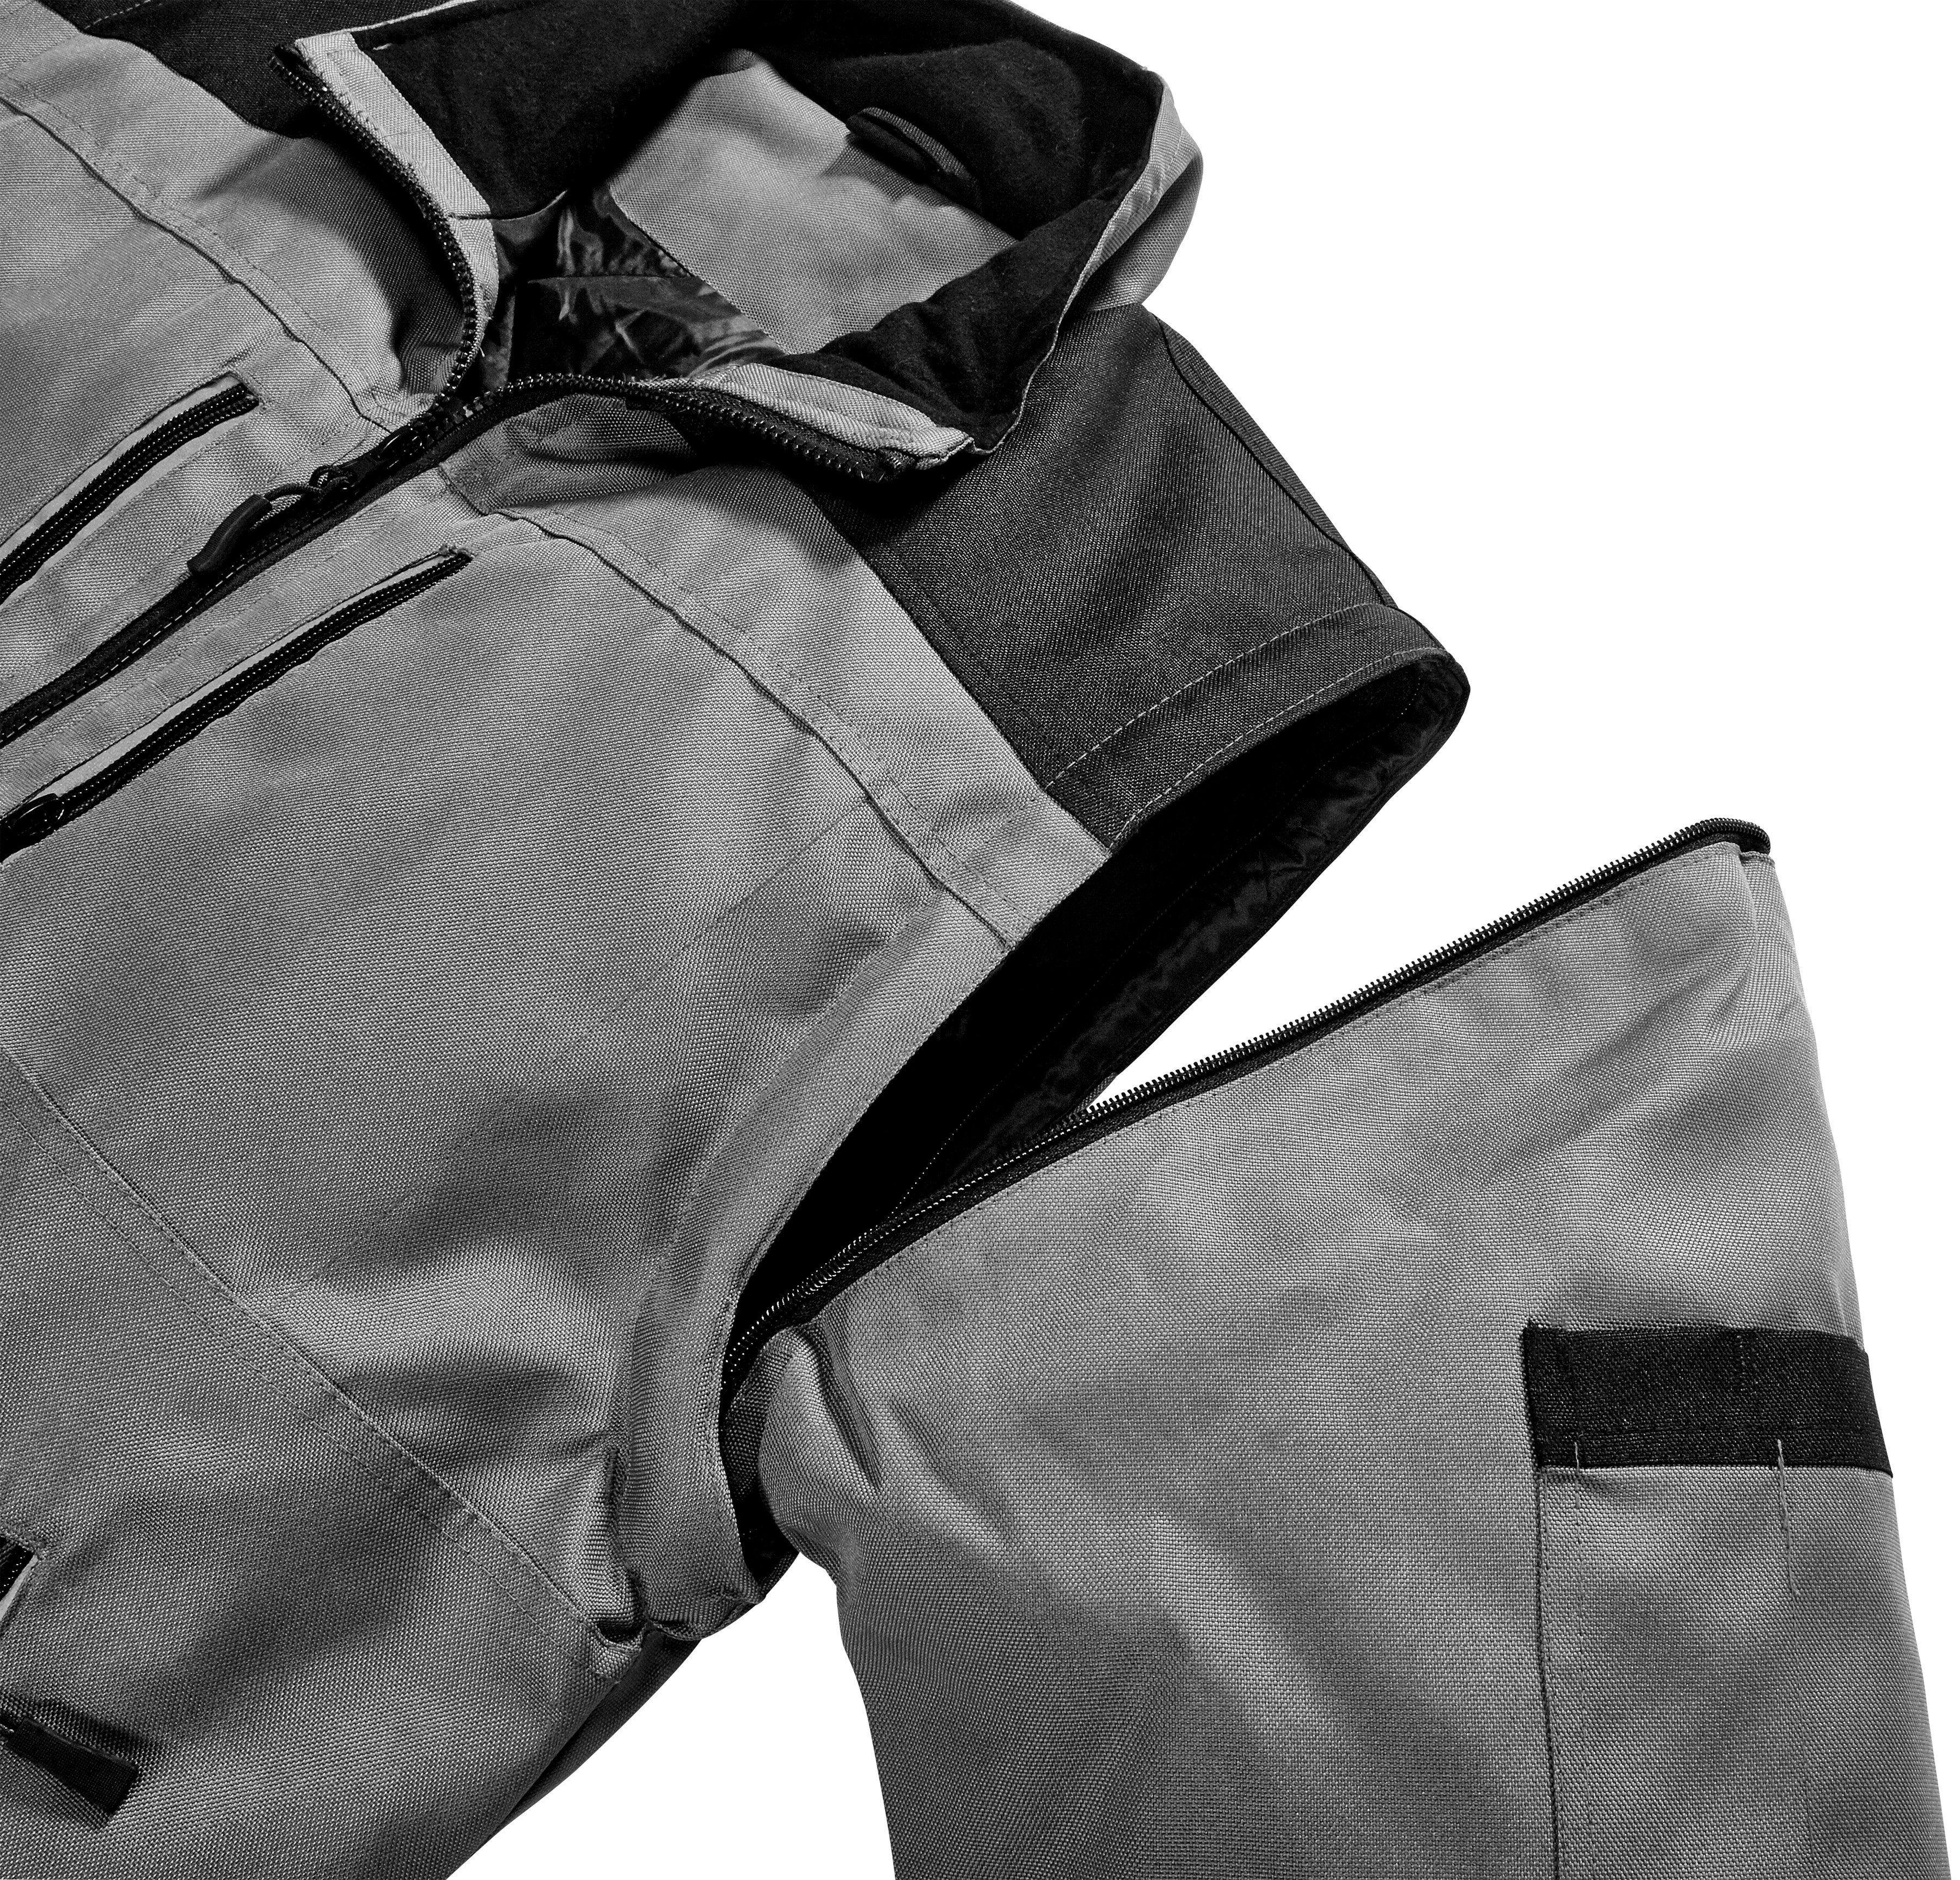 Extreme grau-schwarz Reflexelemente safety& more Arbeitsjacke